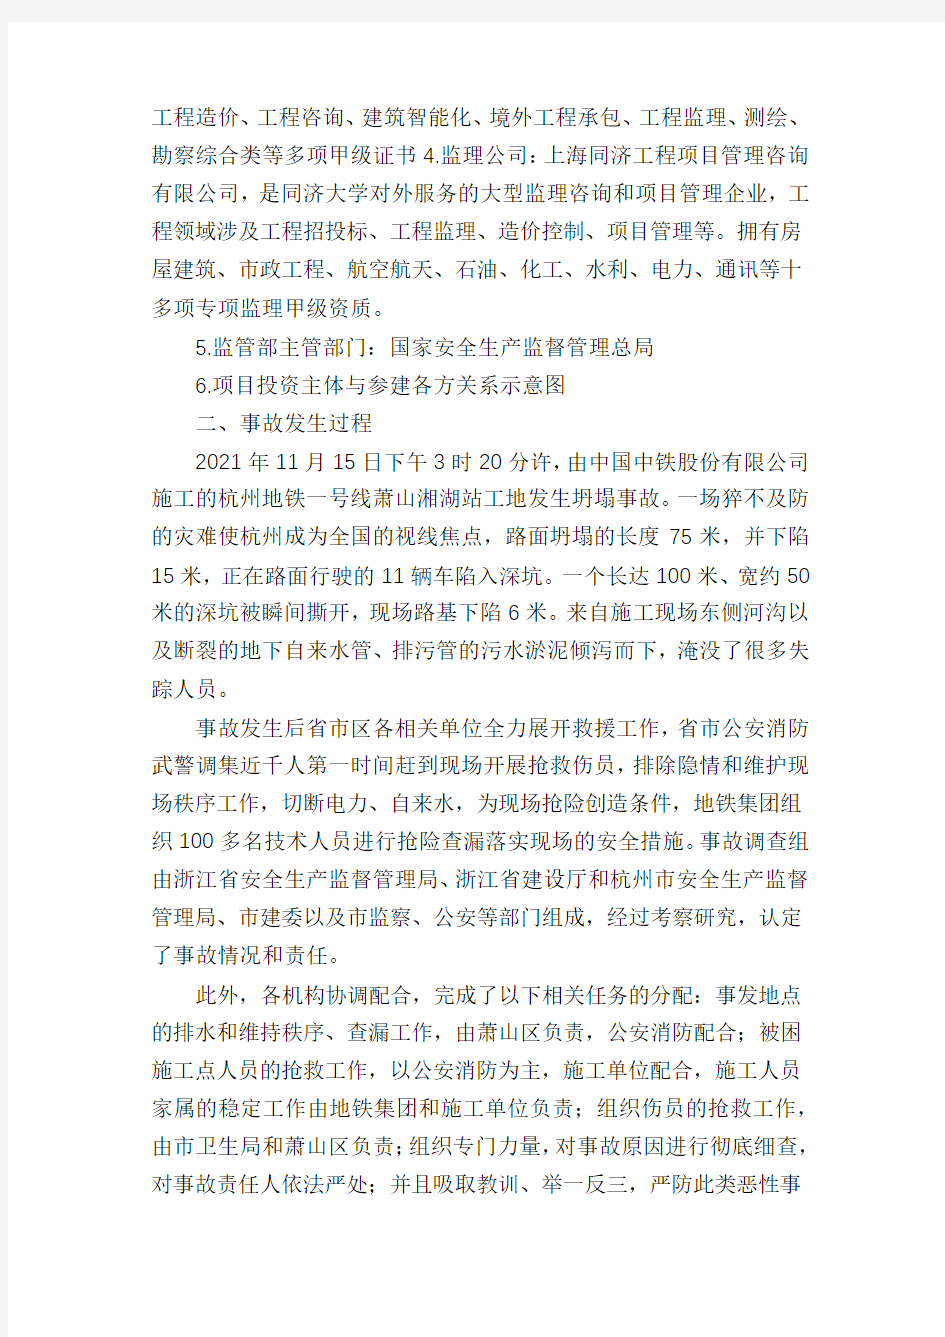 杭州地铁一号线萧山湘湖站安全事故调查报告